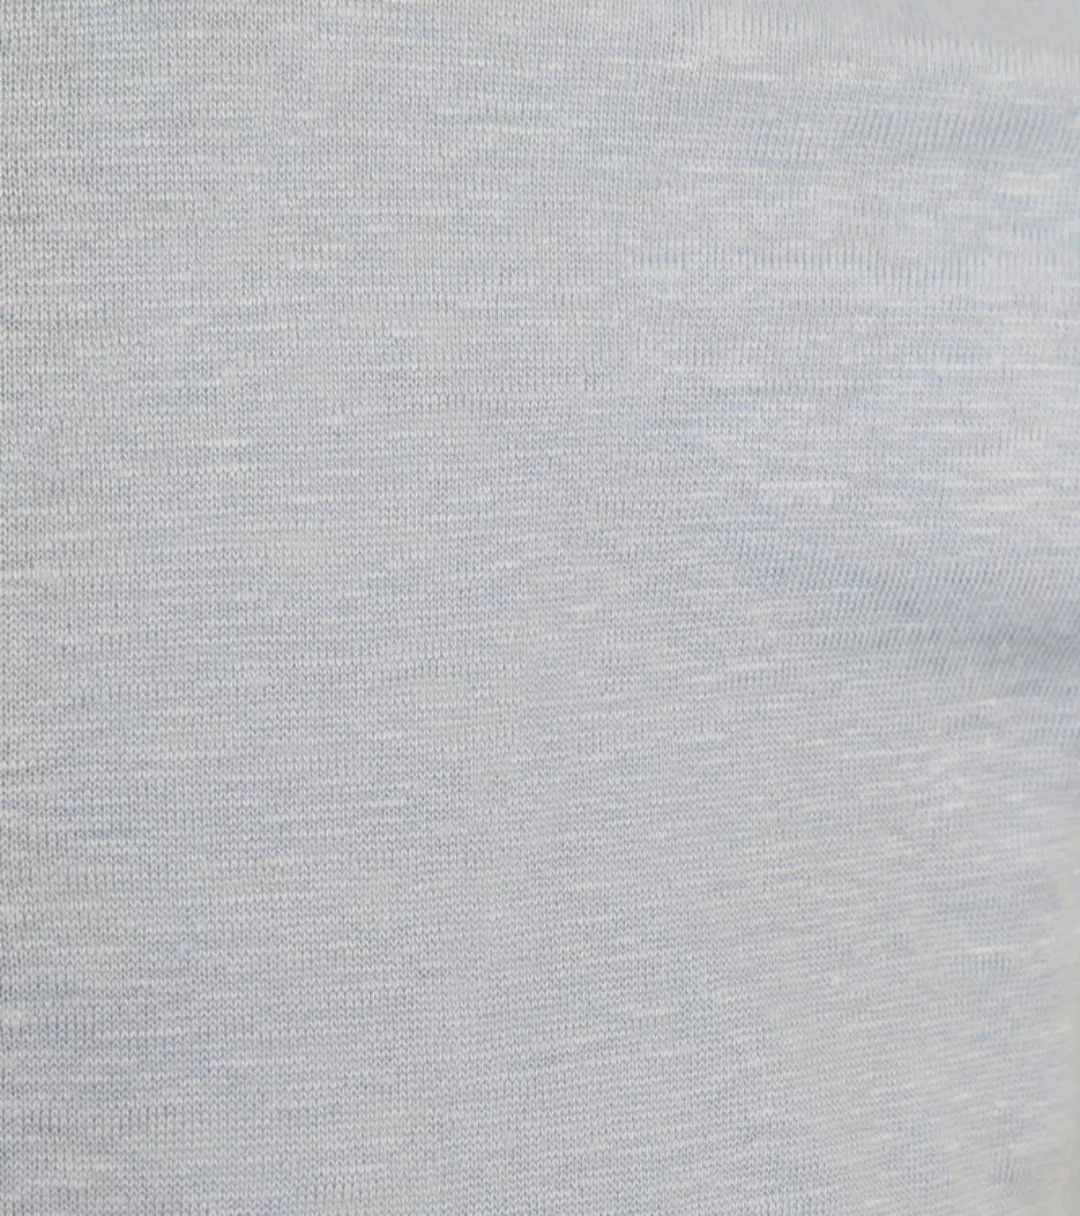 KnowledgeCotton Apparel Poloshirt Leinen Hellblau - Größe L günstig online kaufen